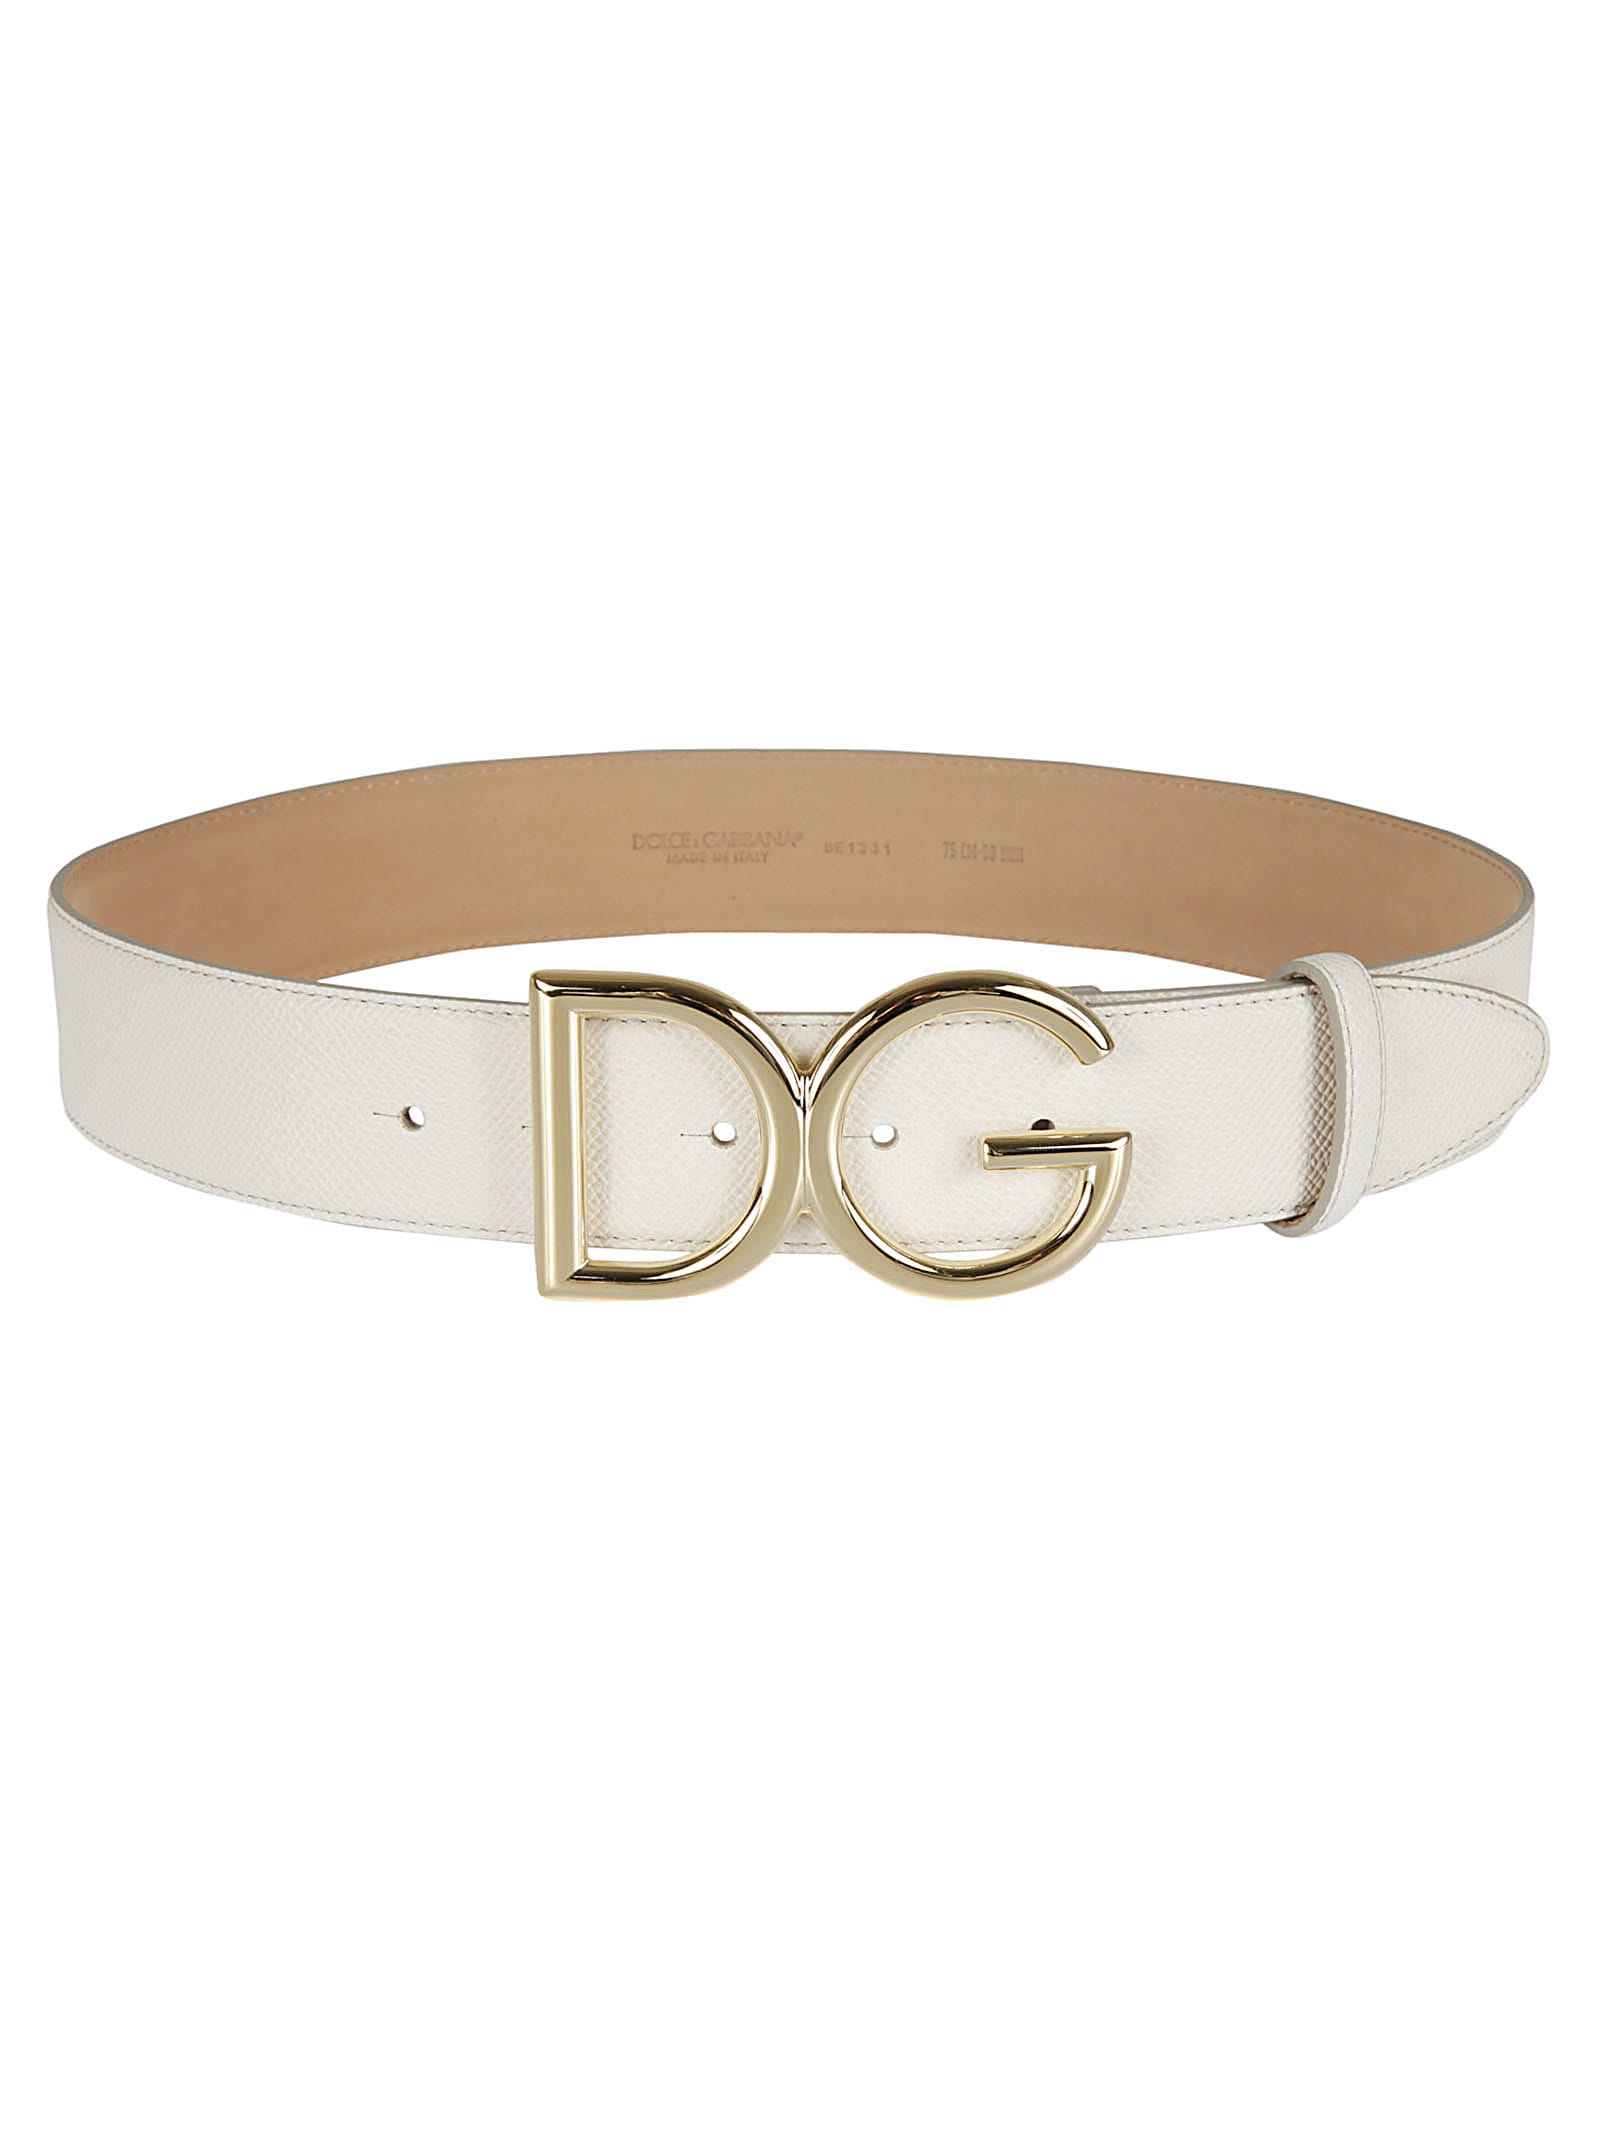 Dolce & Gabbana Dolce & Gabbana Branded Buckle Belt - Bianco - 10875352 ...